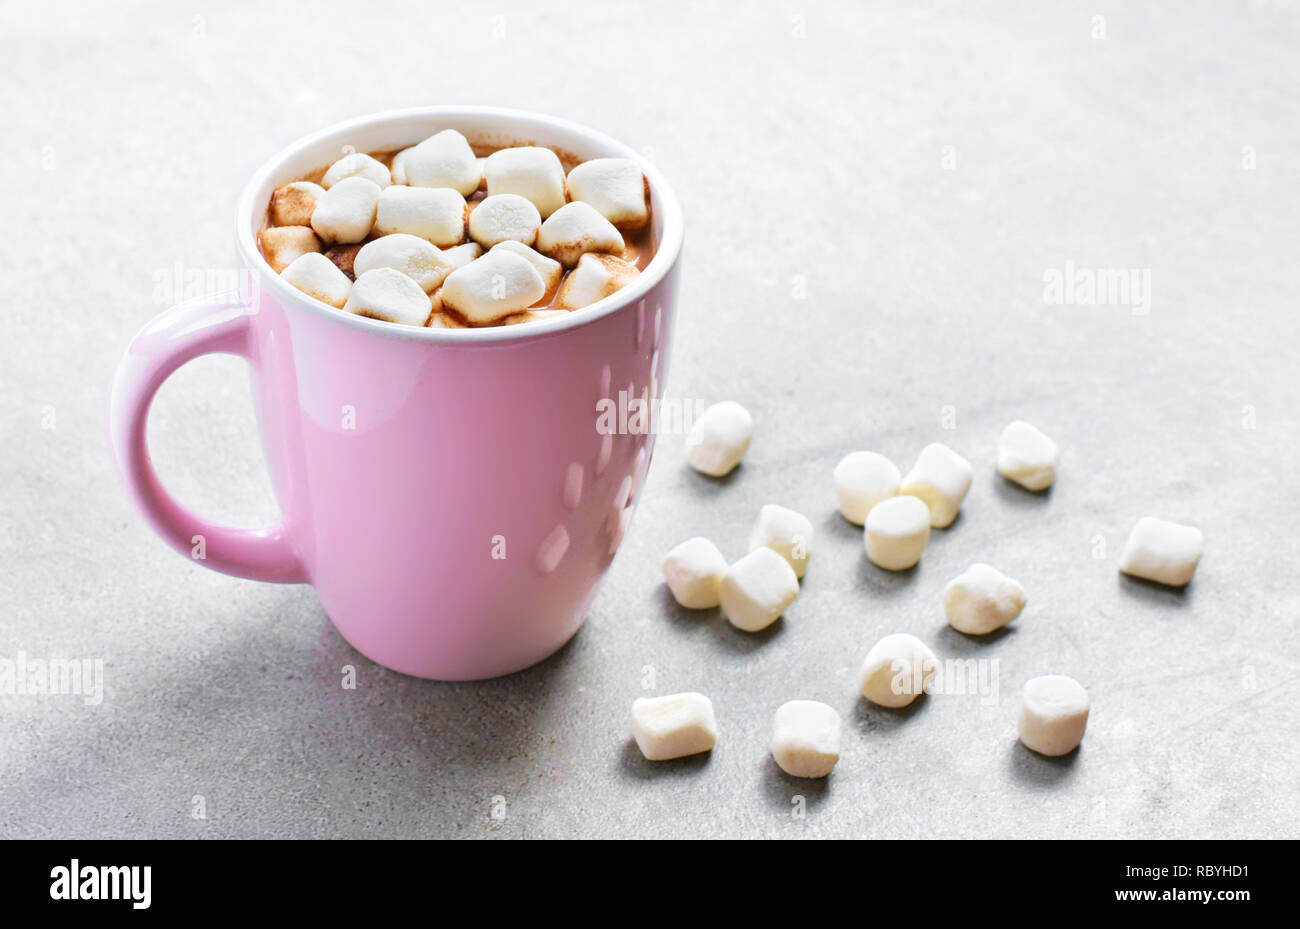 Heiße Schokolade oder Kakao trinken in eine Tasse oder Becher. Blick von oben auf die heiße Schokolade mit Marshmallows auf einem Stein. Stockfoto